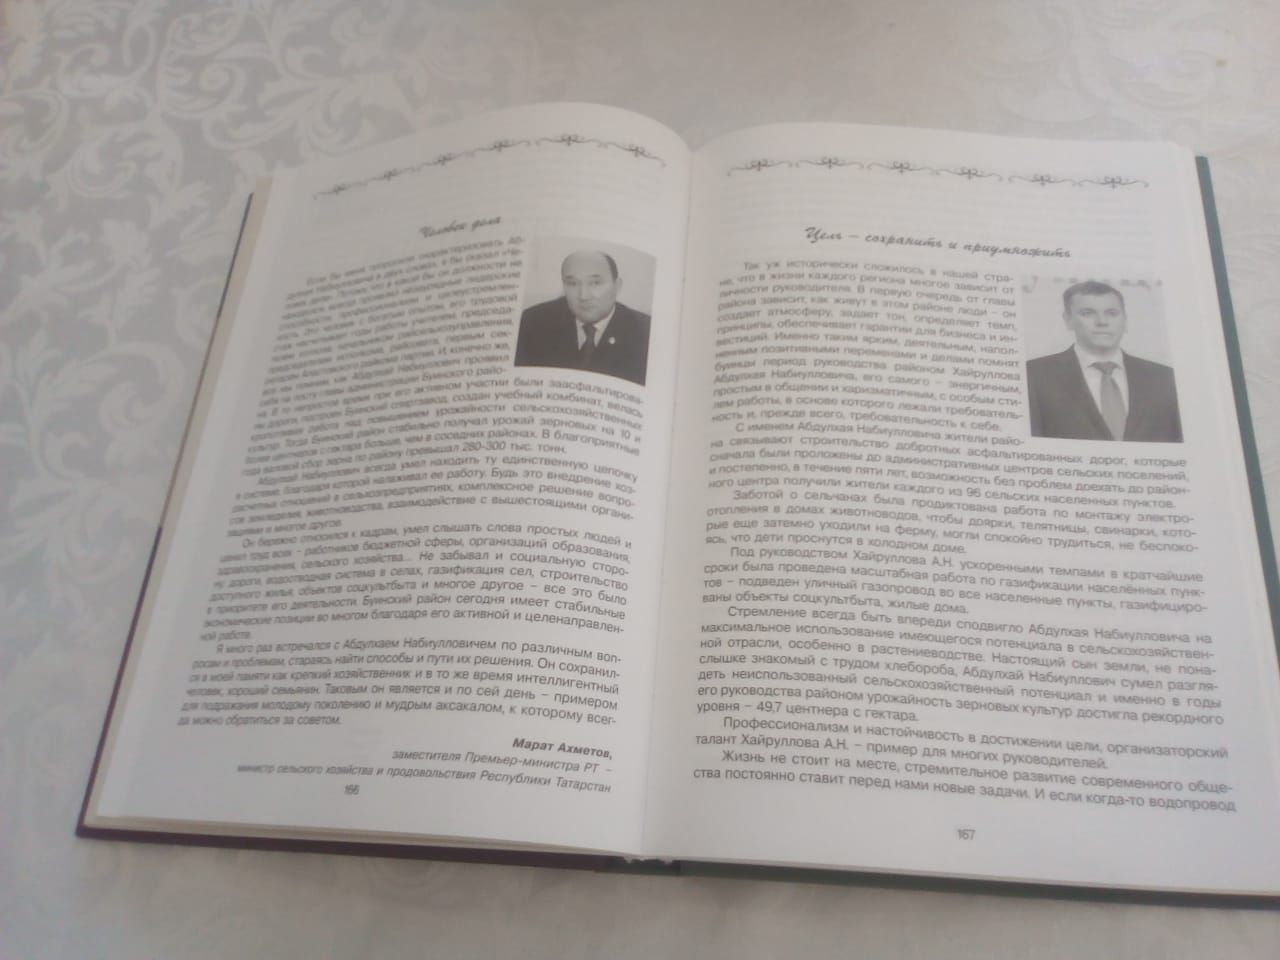 Сегодня состоялась презентация книги бывшего главы Буинского района Абдулхая Набиулловича Хайруллова (+фото)